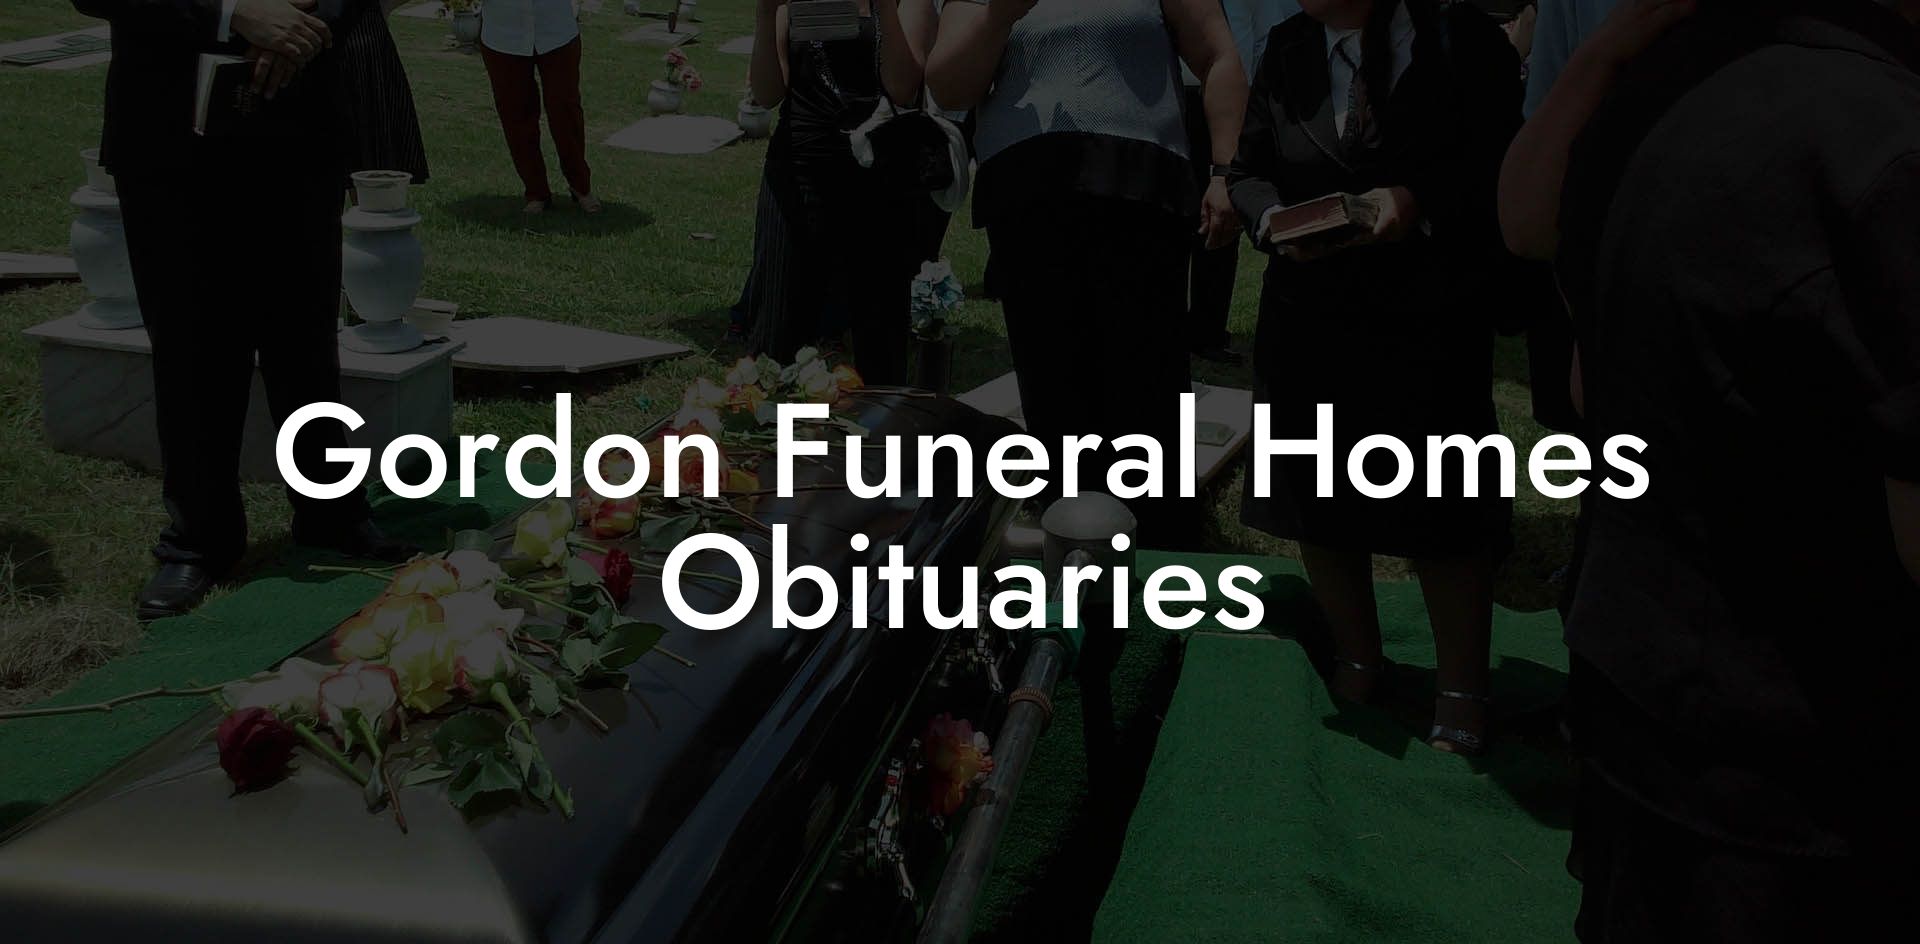 Gordon Funeral Homes Obituaries